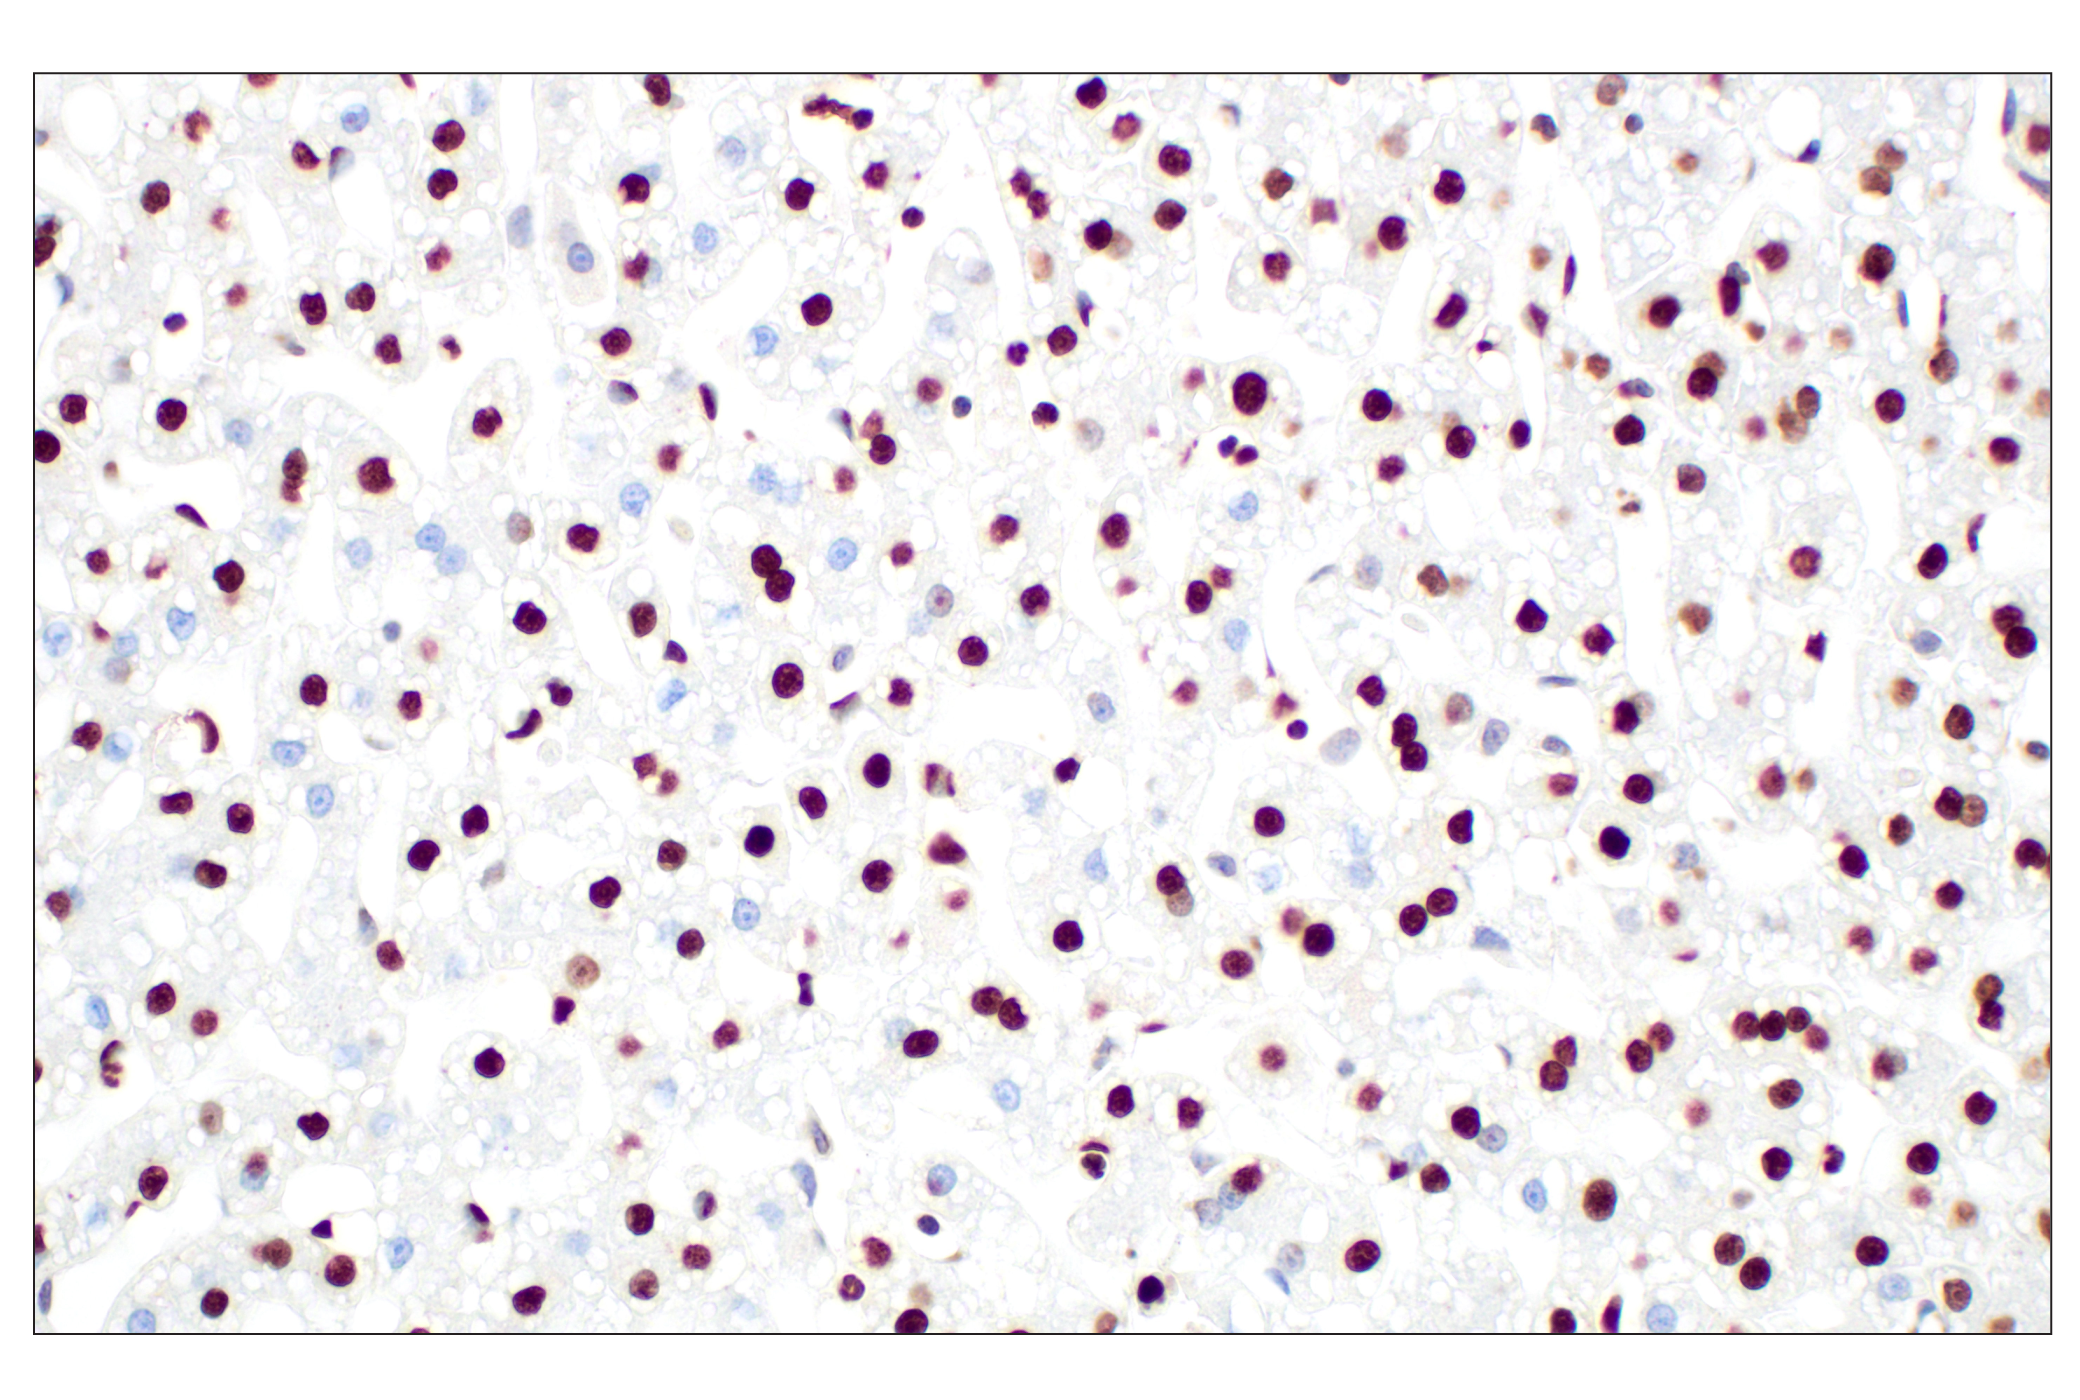  Image 34: Methyl-Histone H3 (Lys36) Antibody Sampler Kit